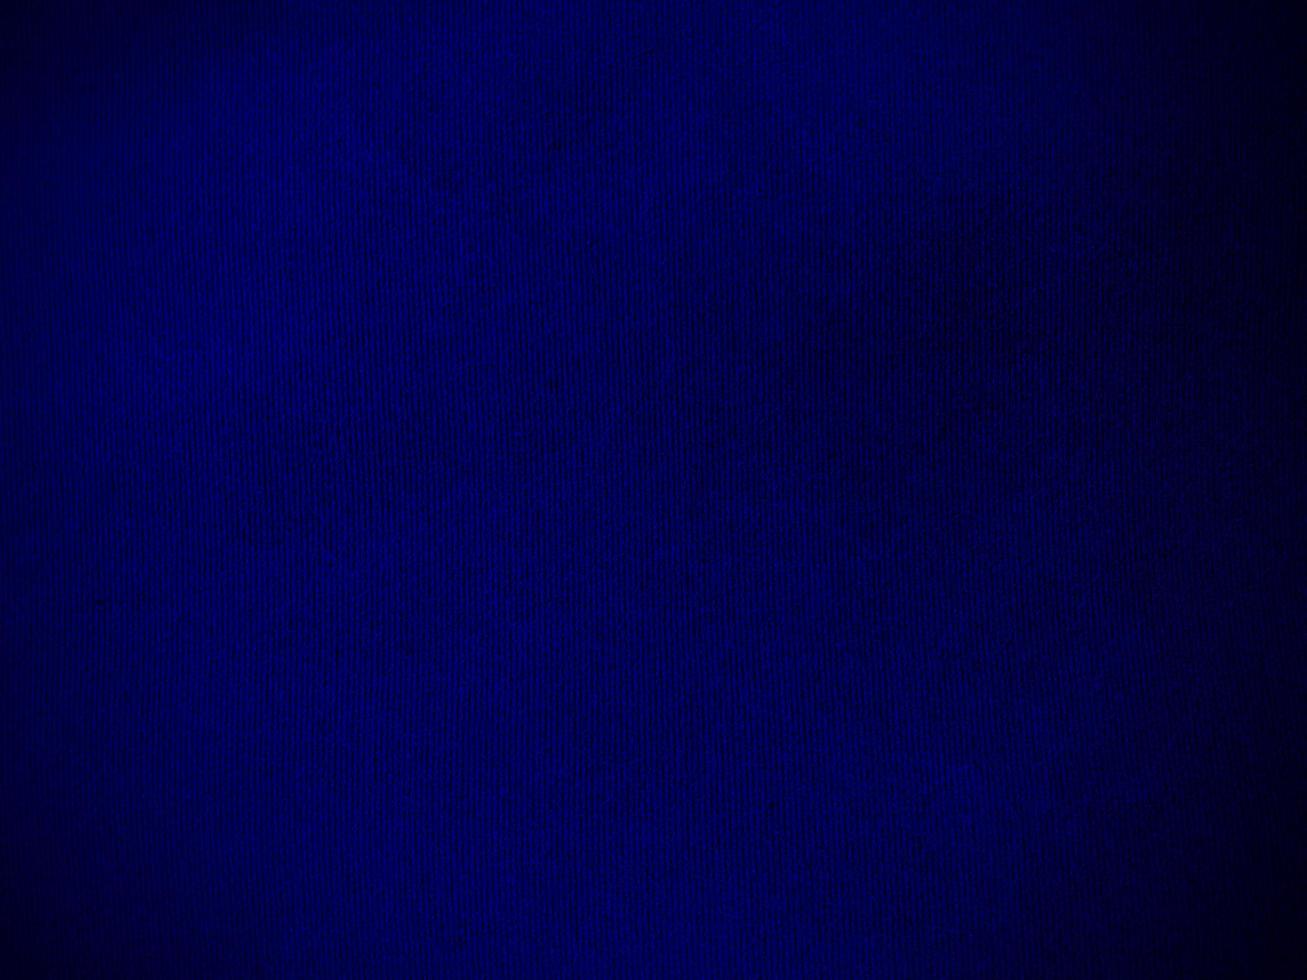 blauwe fluwelen stof textuur gebruikt als achtergrond. lege blauwe stoffenachtergrond van zacht en vlot textielmateriaal. er is ruimte voor tekst. foto